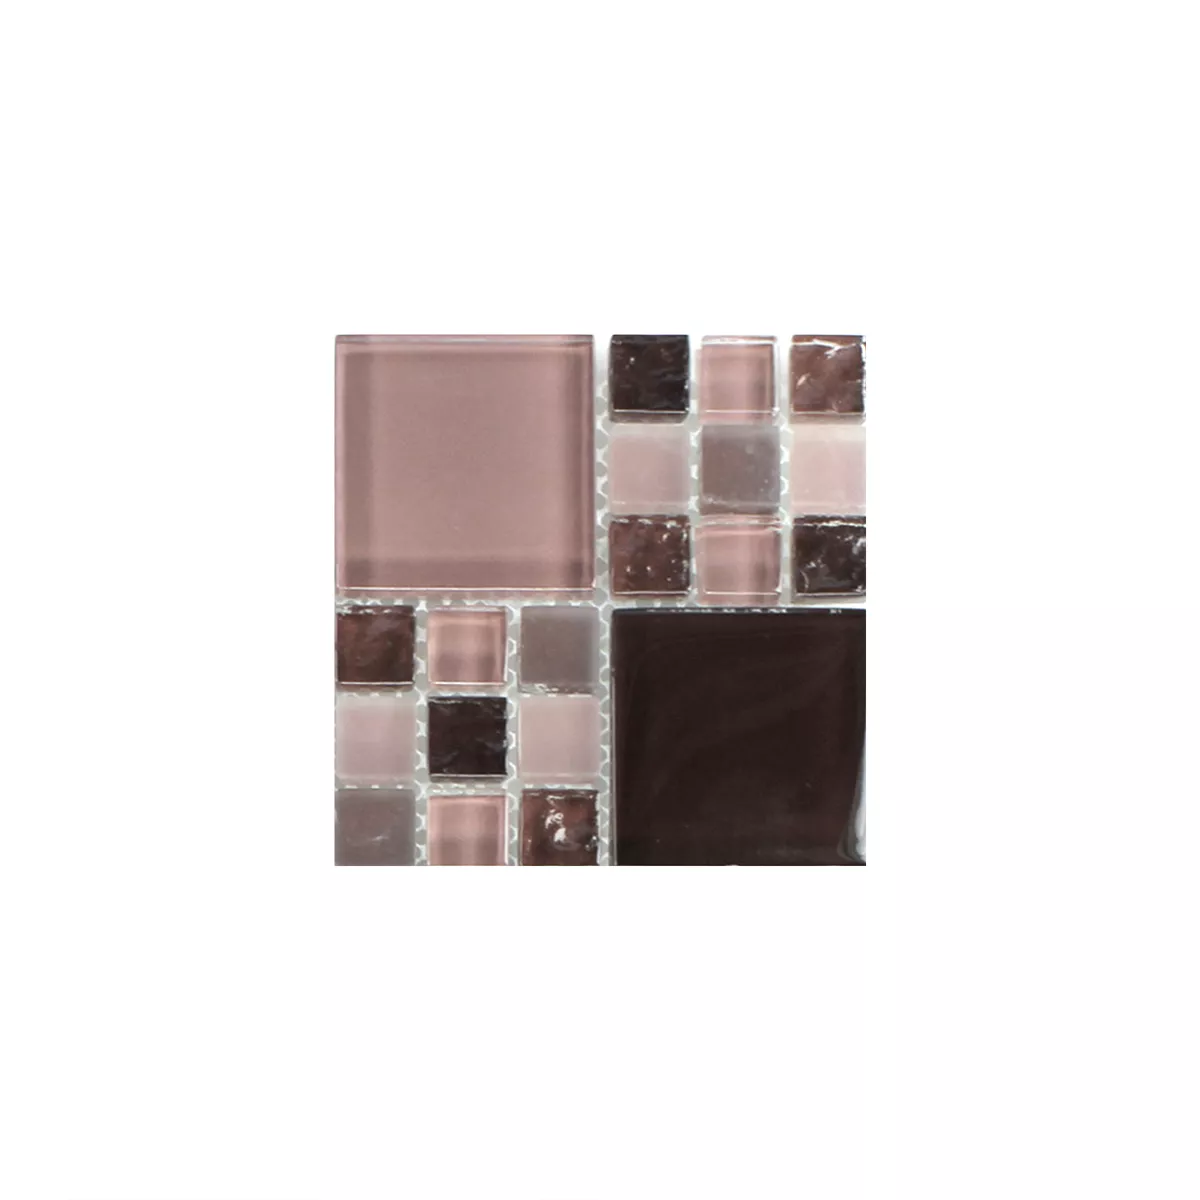 Sample Mosaic Tiles Glass Tiles Bordeaux Mix